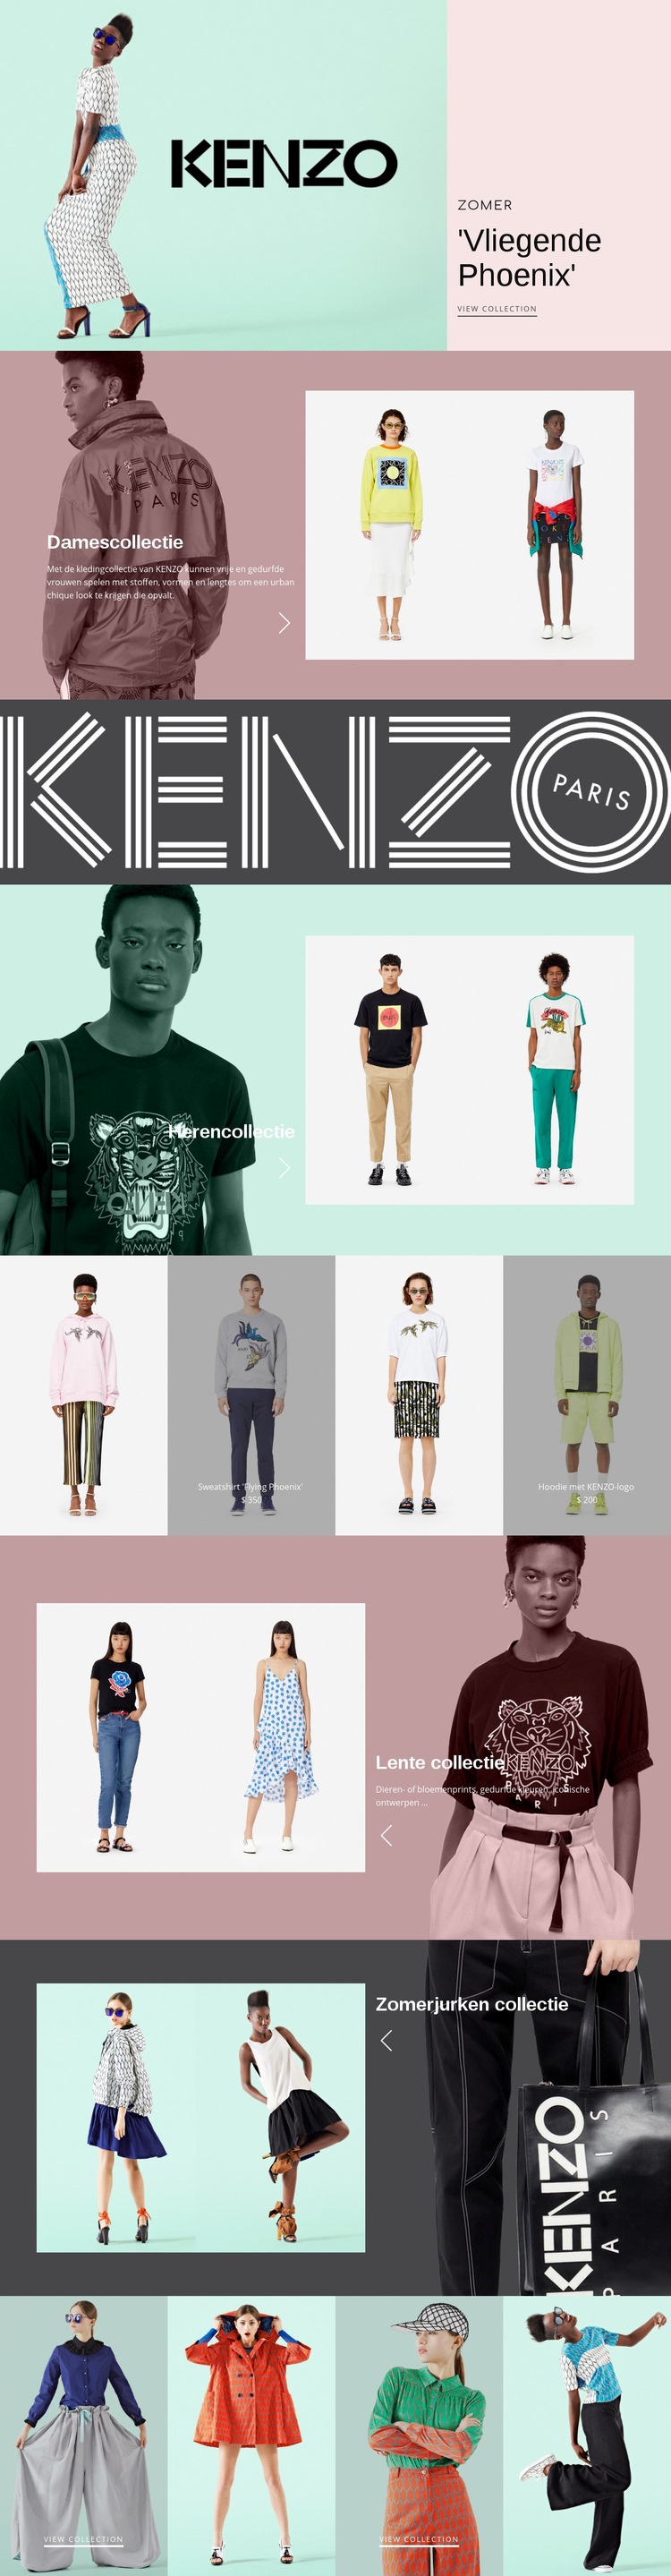 Atelier van moderne mode Website ontwerp